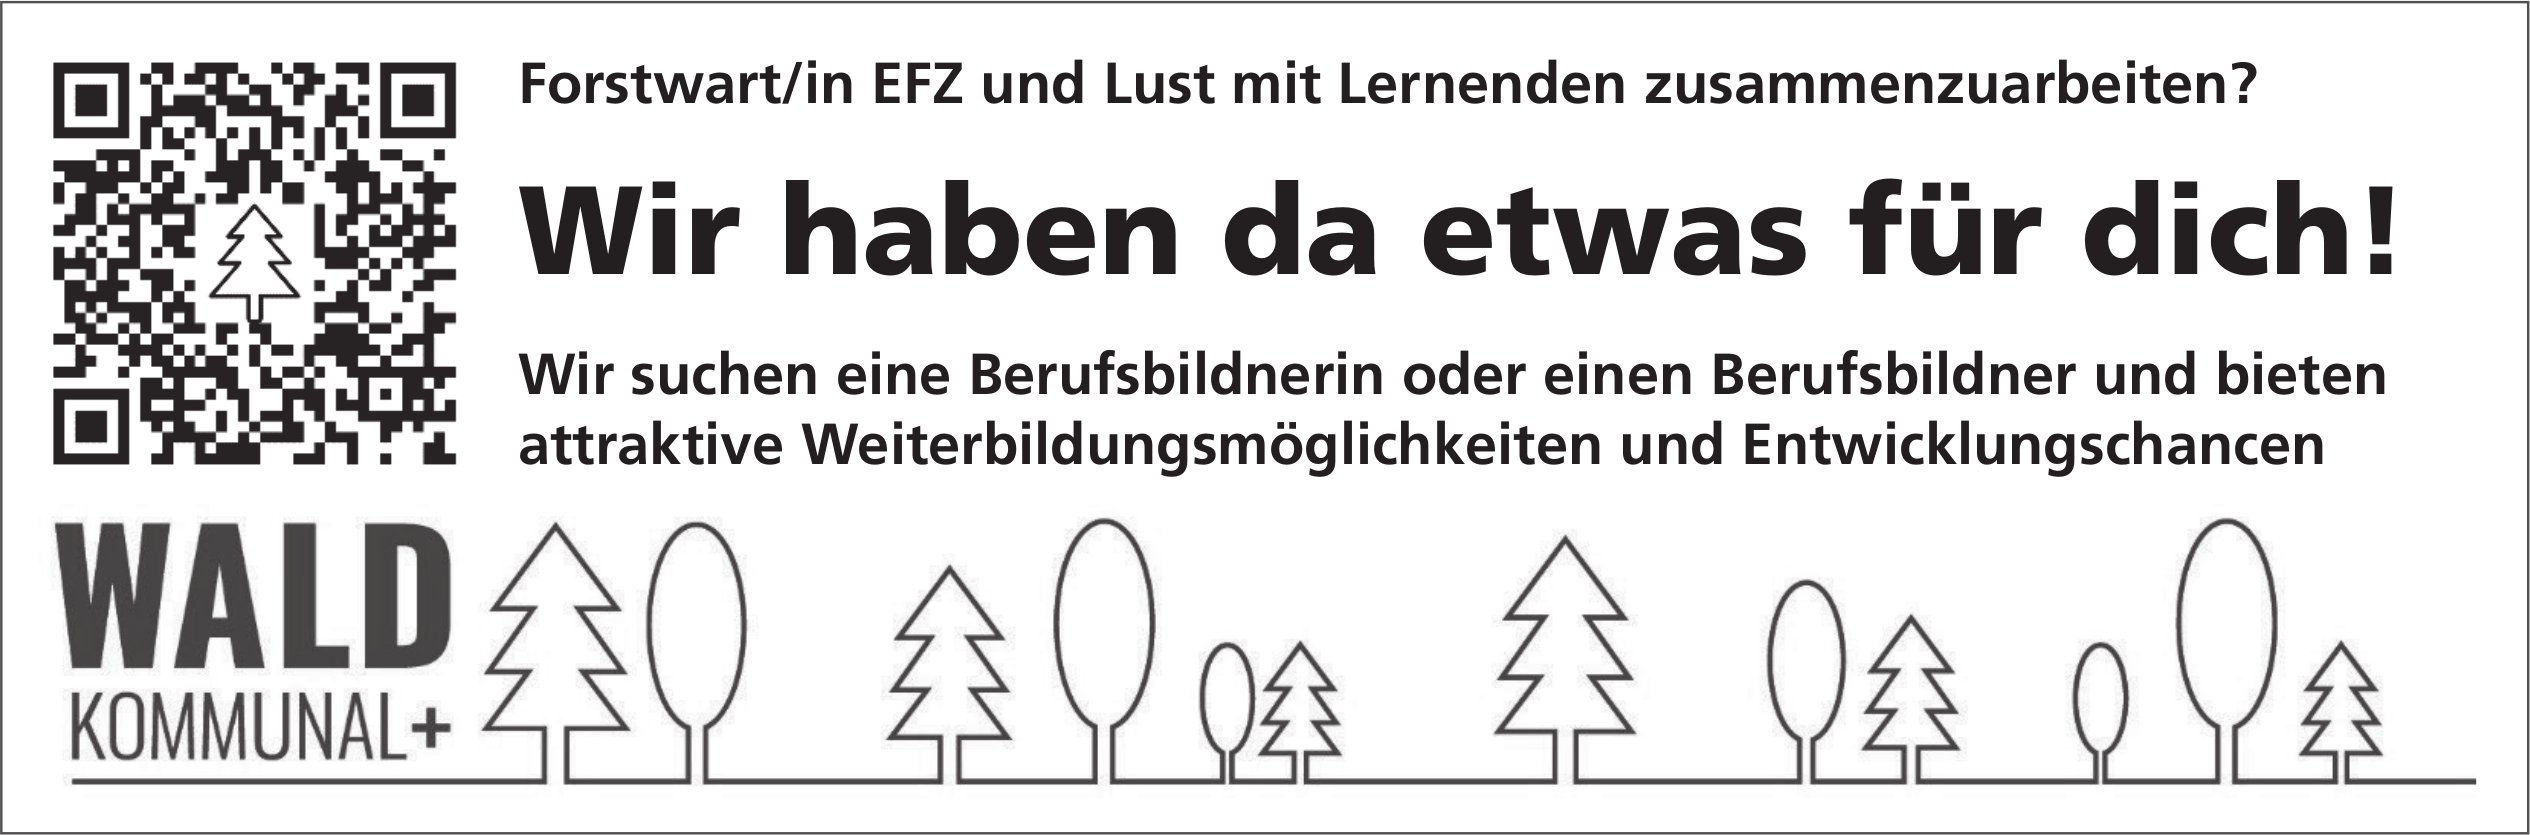 Forstwart/in EFZ, Wald Kommunal+, gesucht